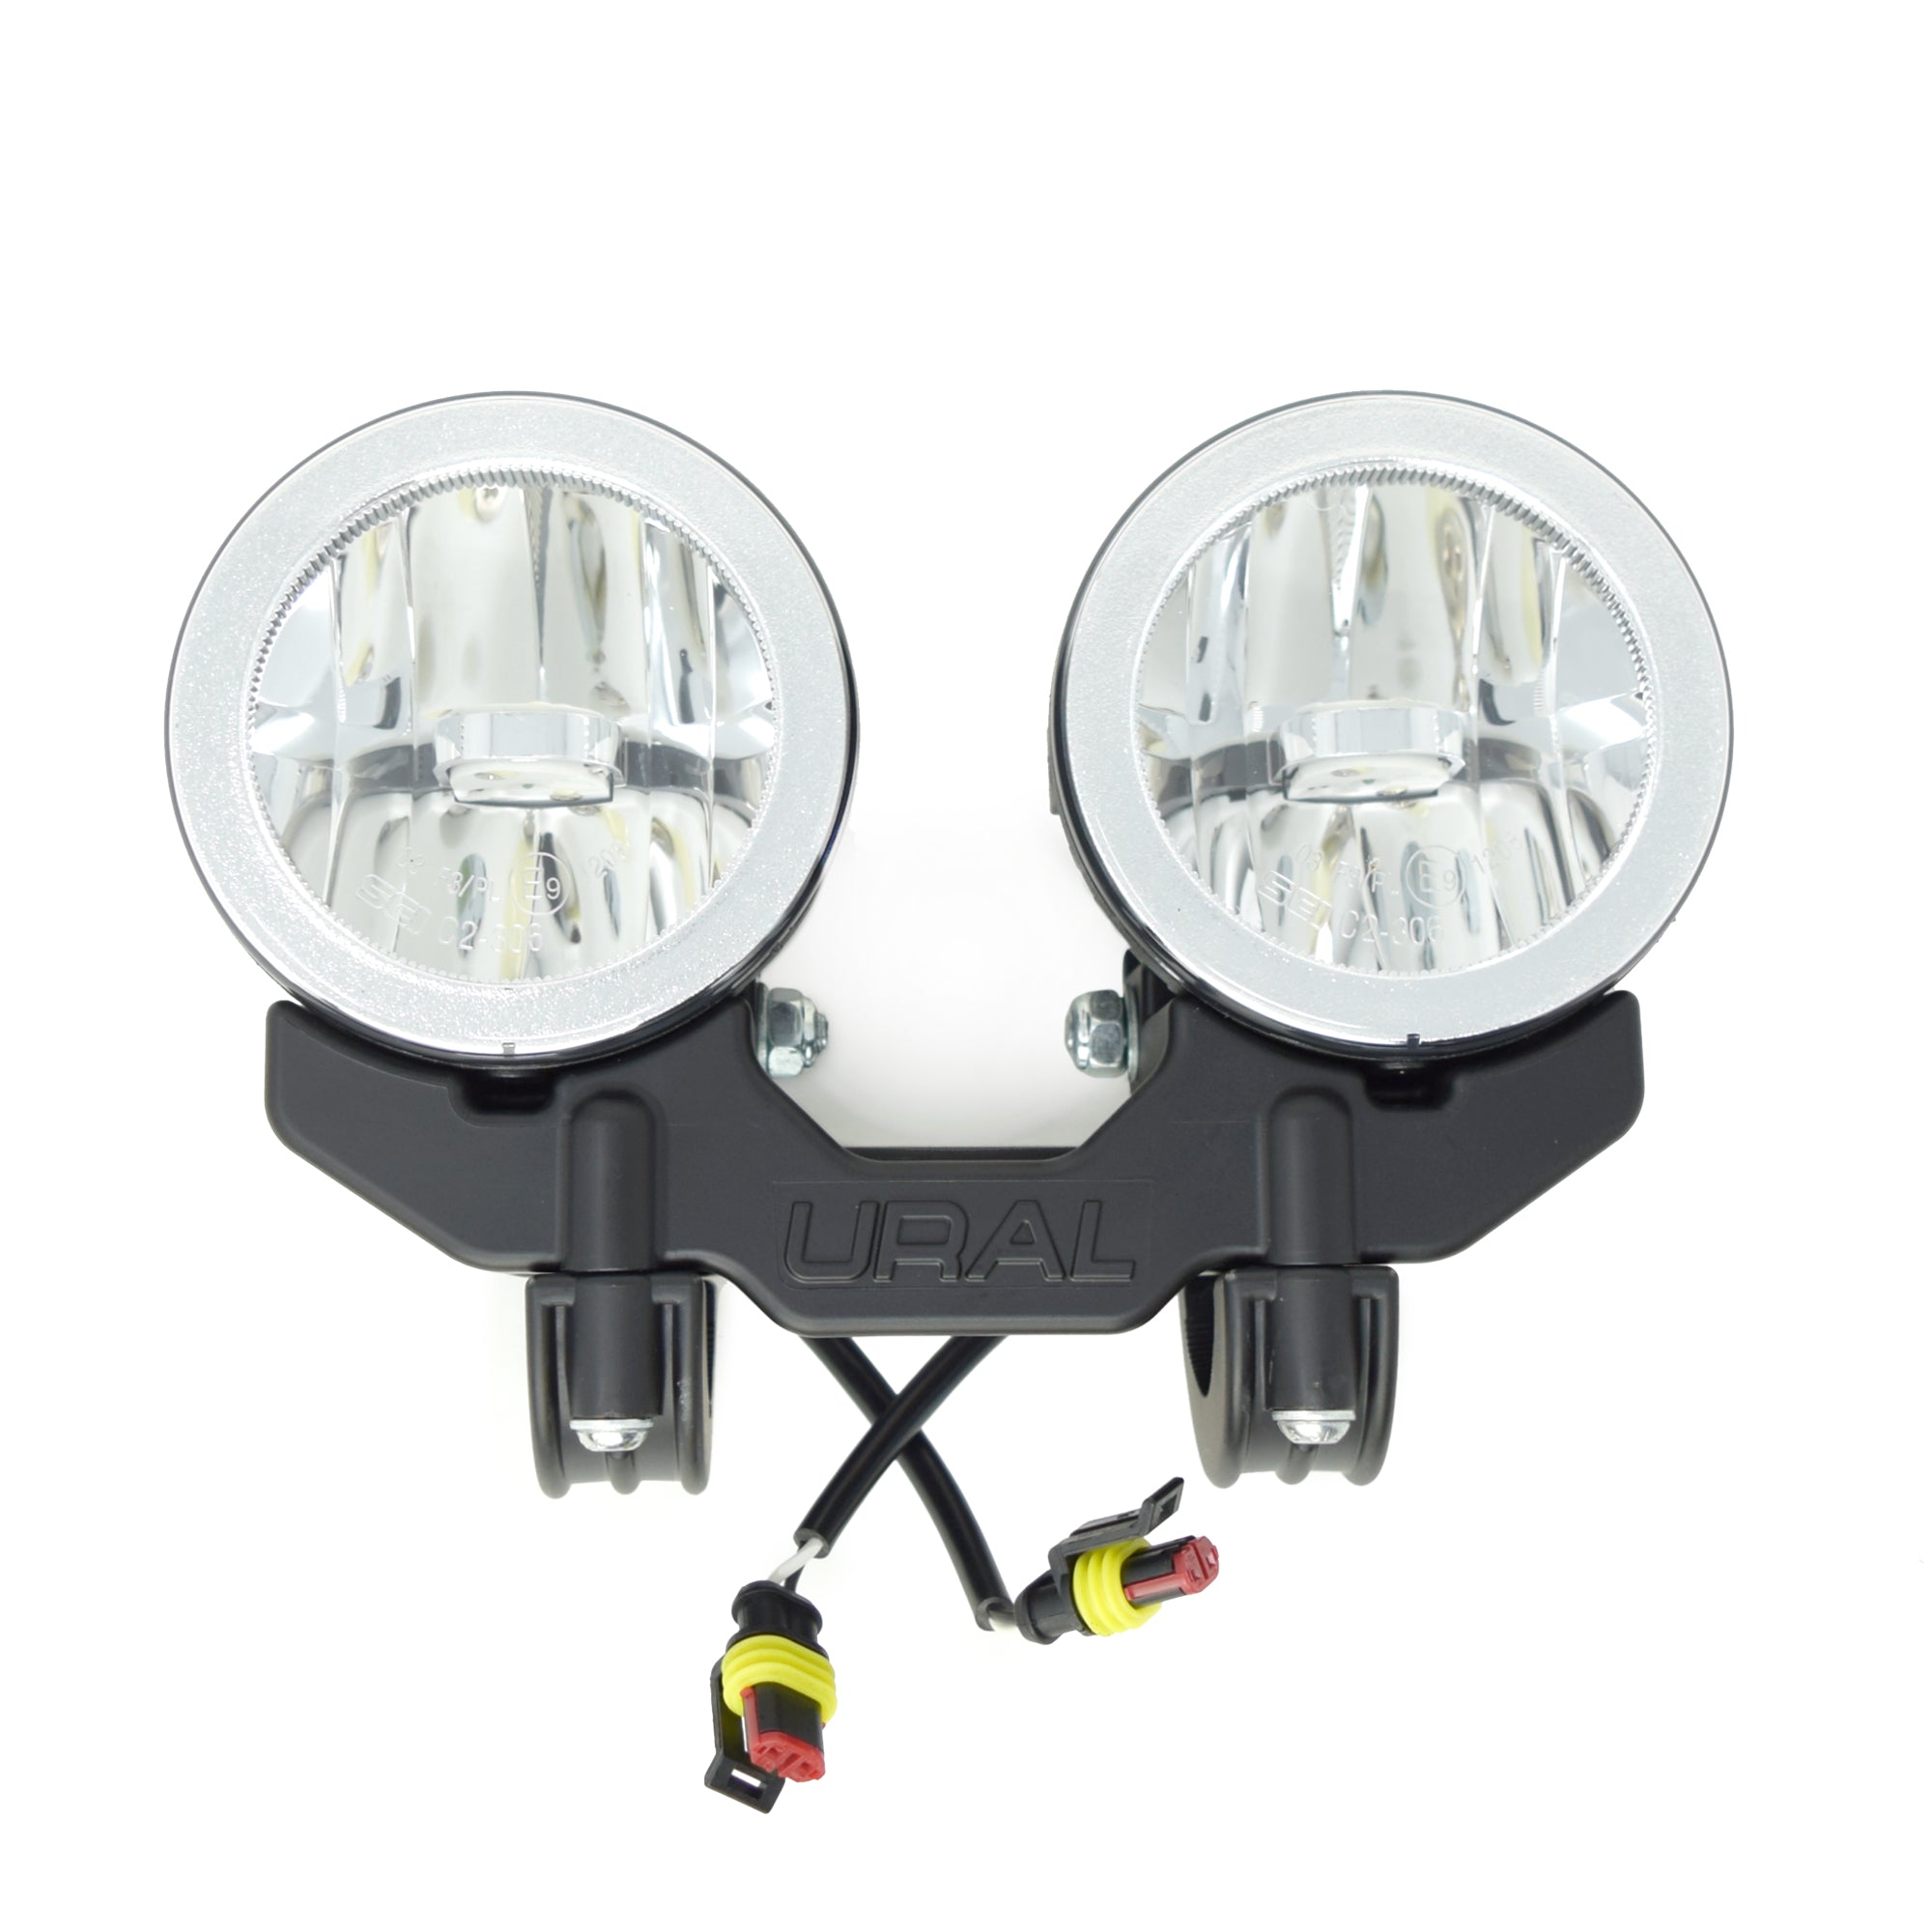 LED Dual Sidecar Light Kit